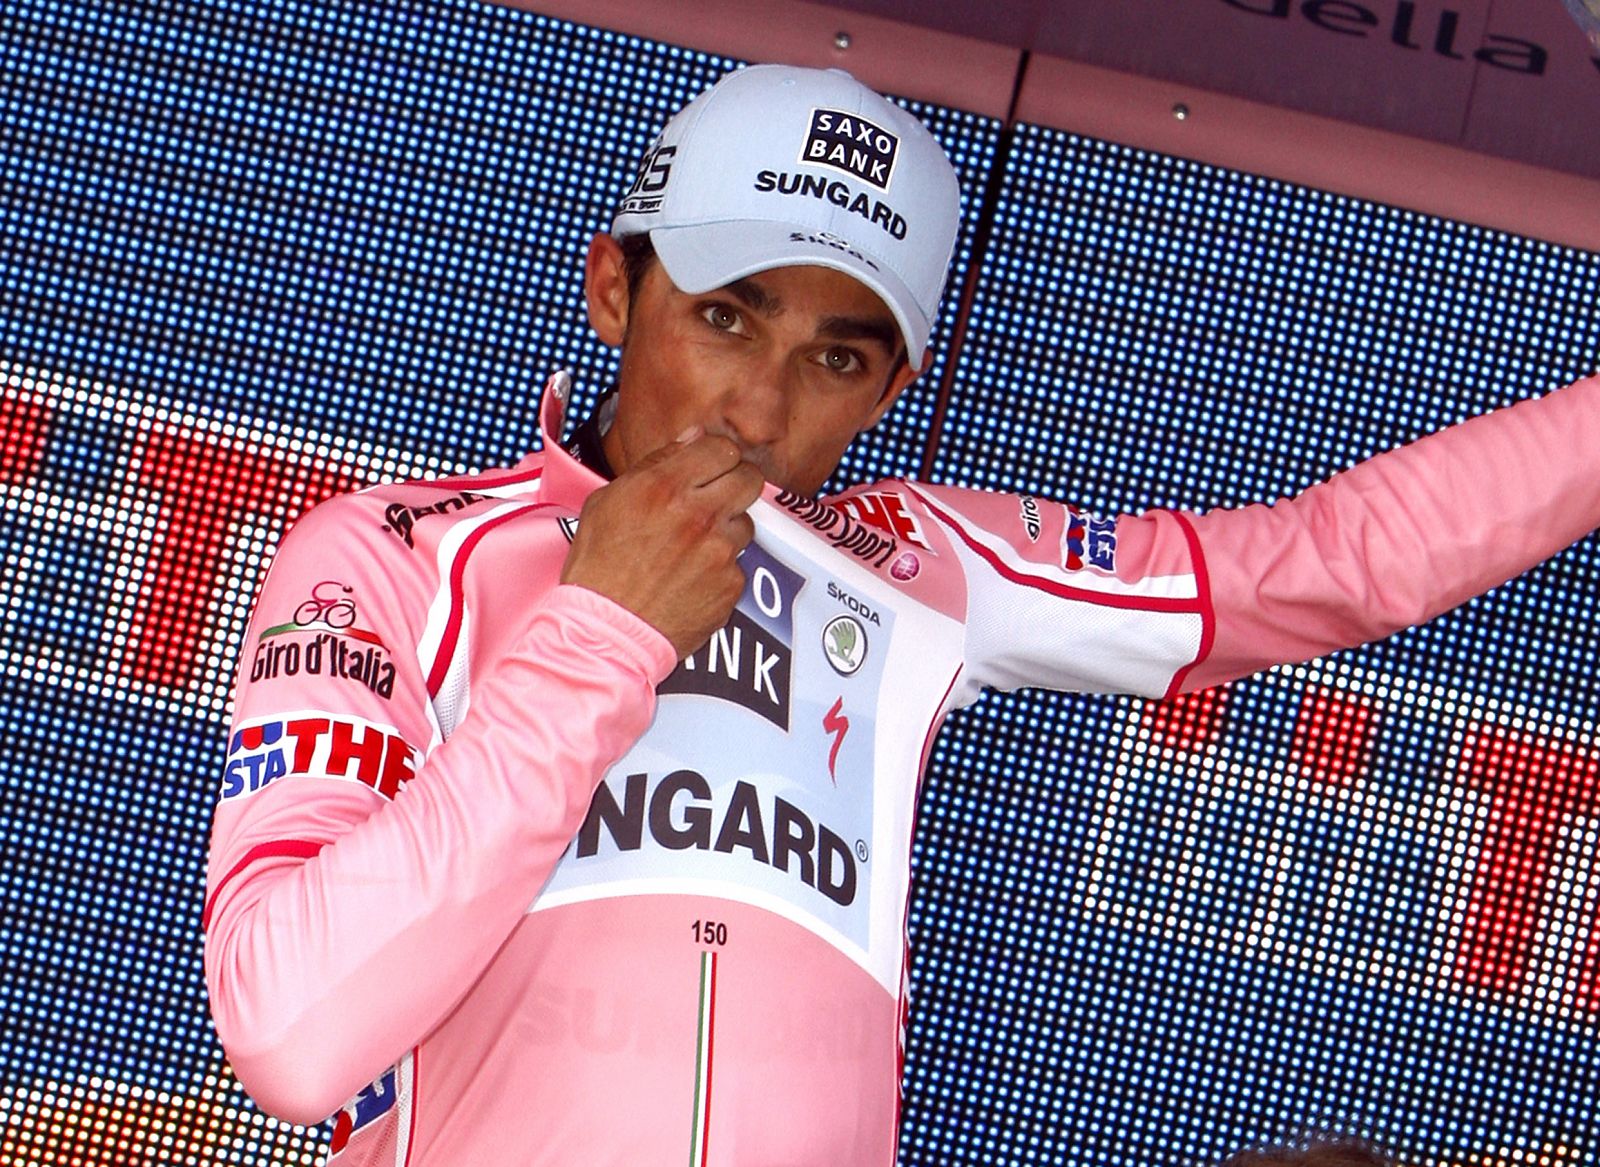 Alberto Contador, con la 'maglia' rosa conseguida en la cima del Etna.